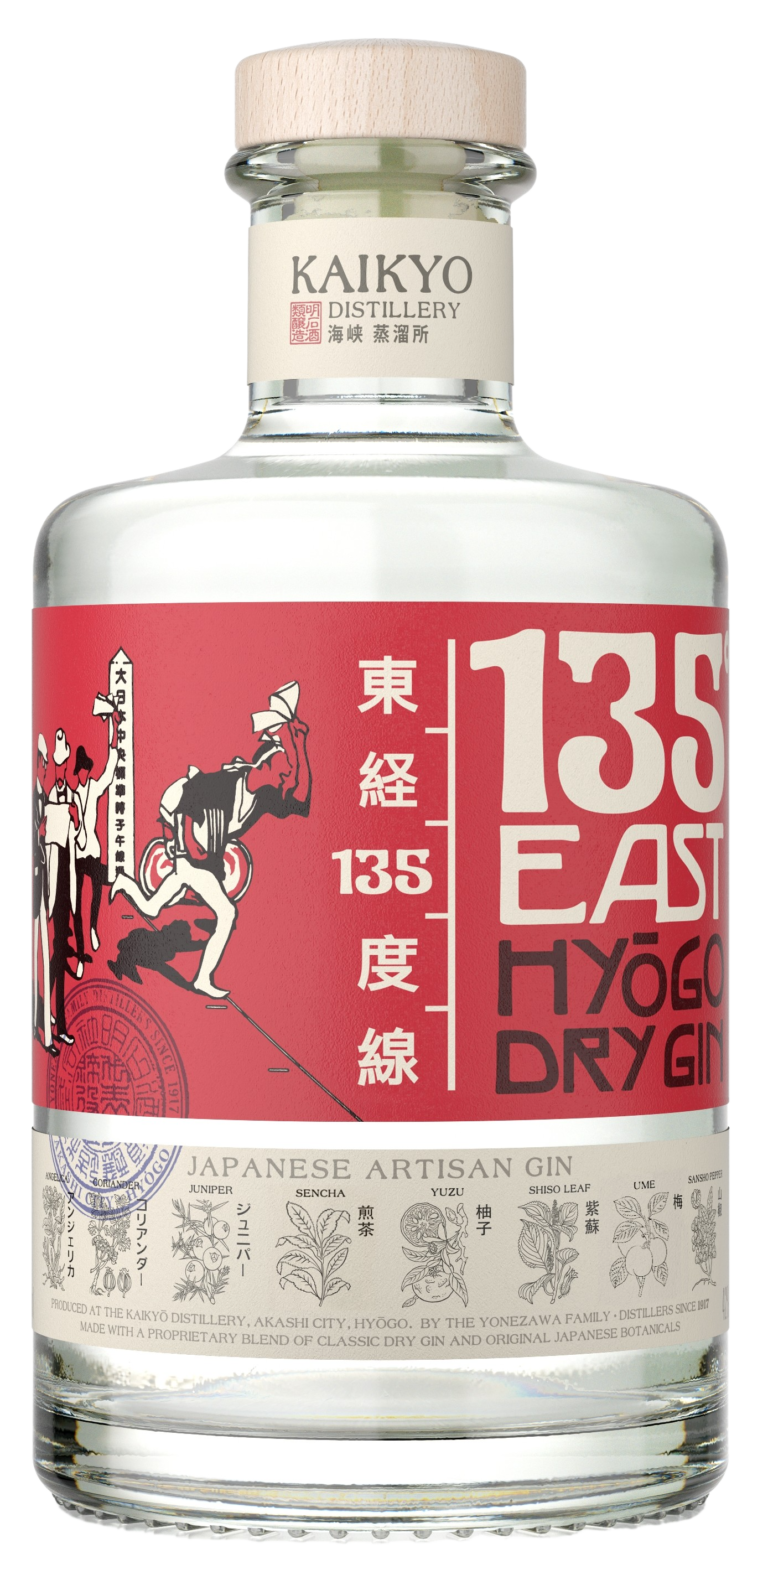 135º East Hyogo Dry Gin